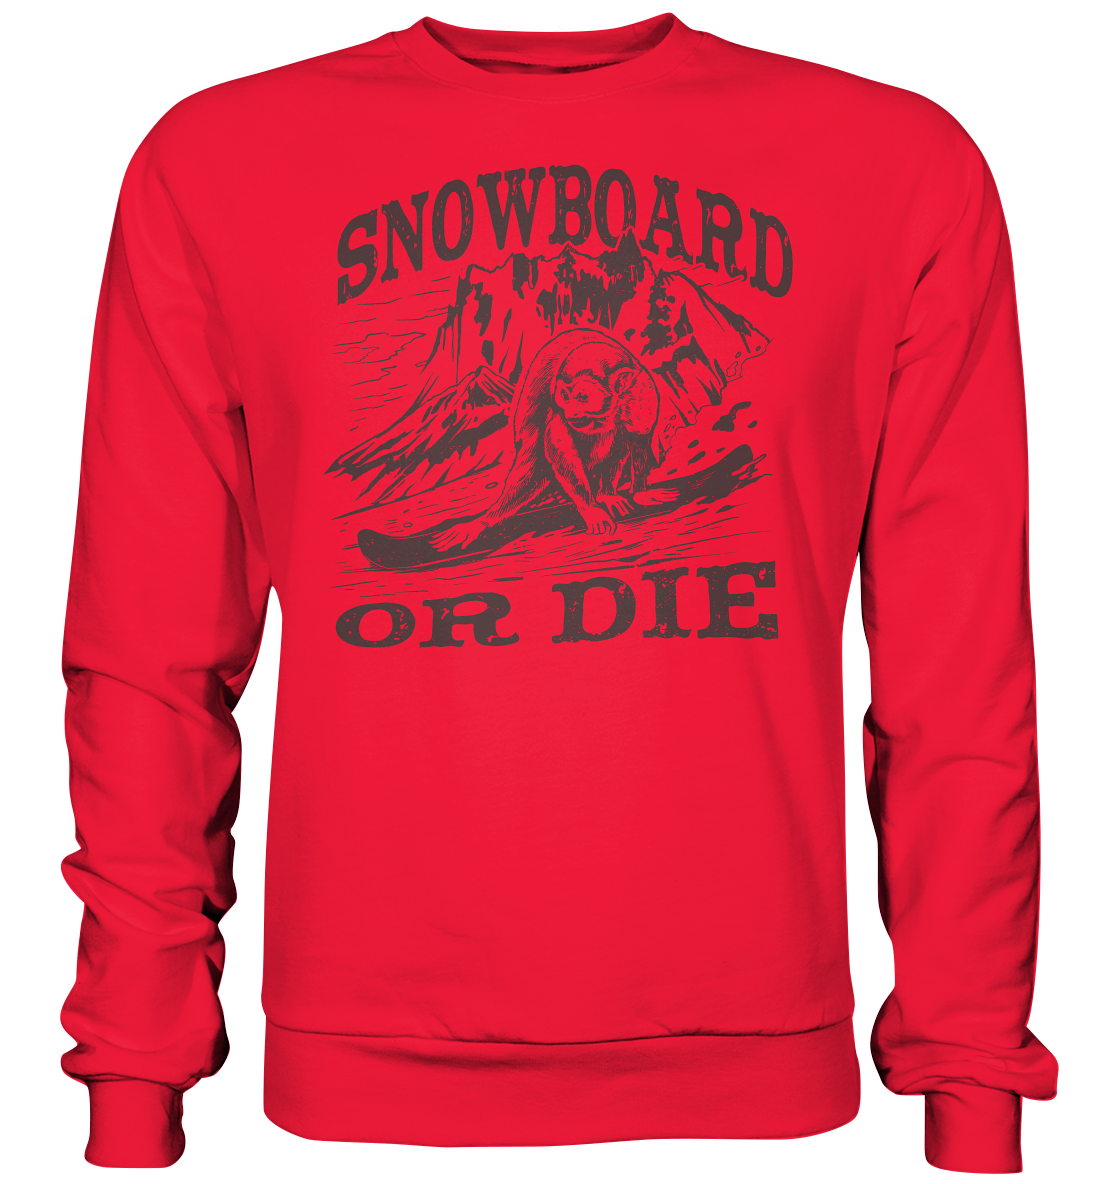 Snowboard or Die , monkey on a snowboard - premium sweatshirt